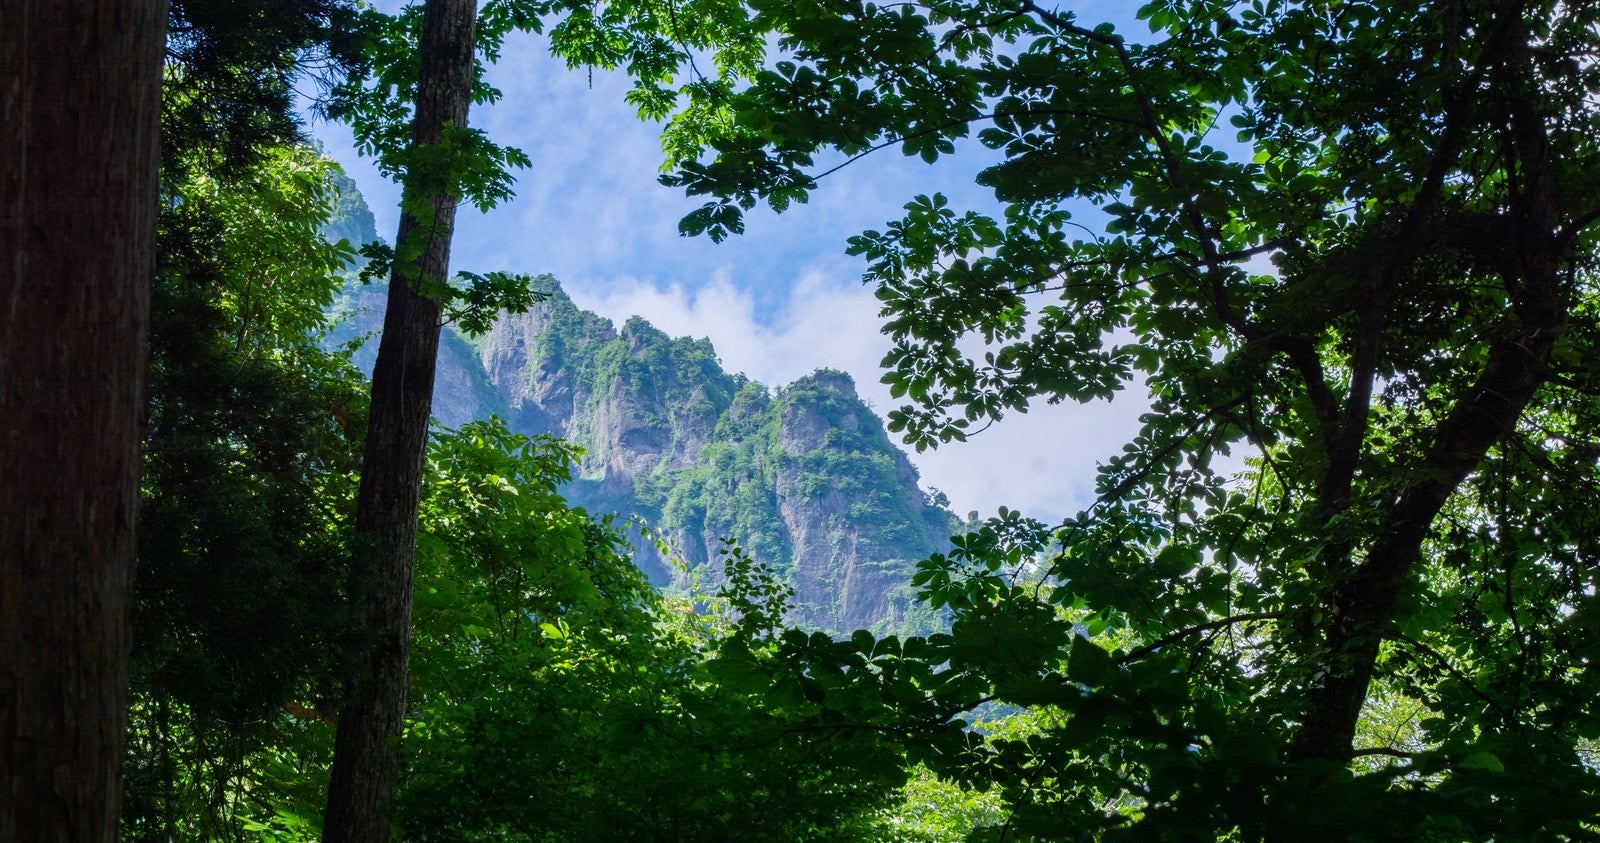 「木々の隙間から見える戸隠の急峻な山の姿」の写真